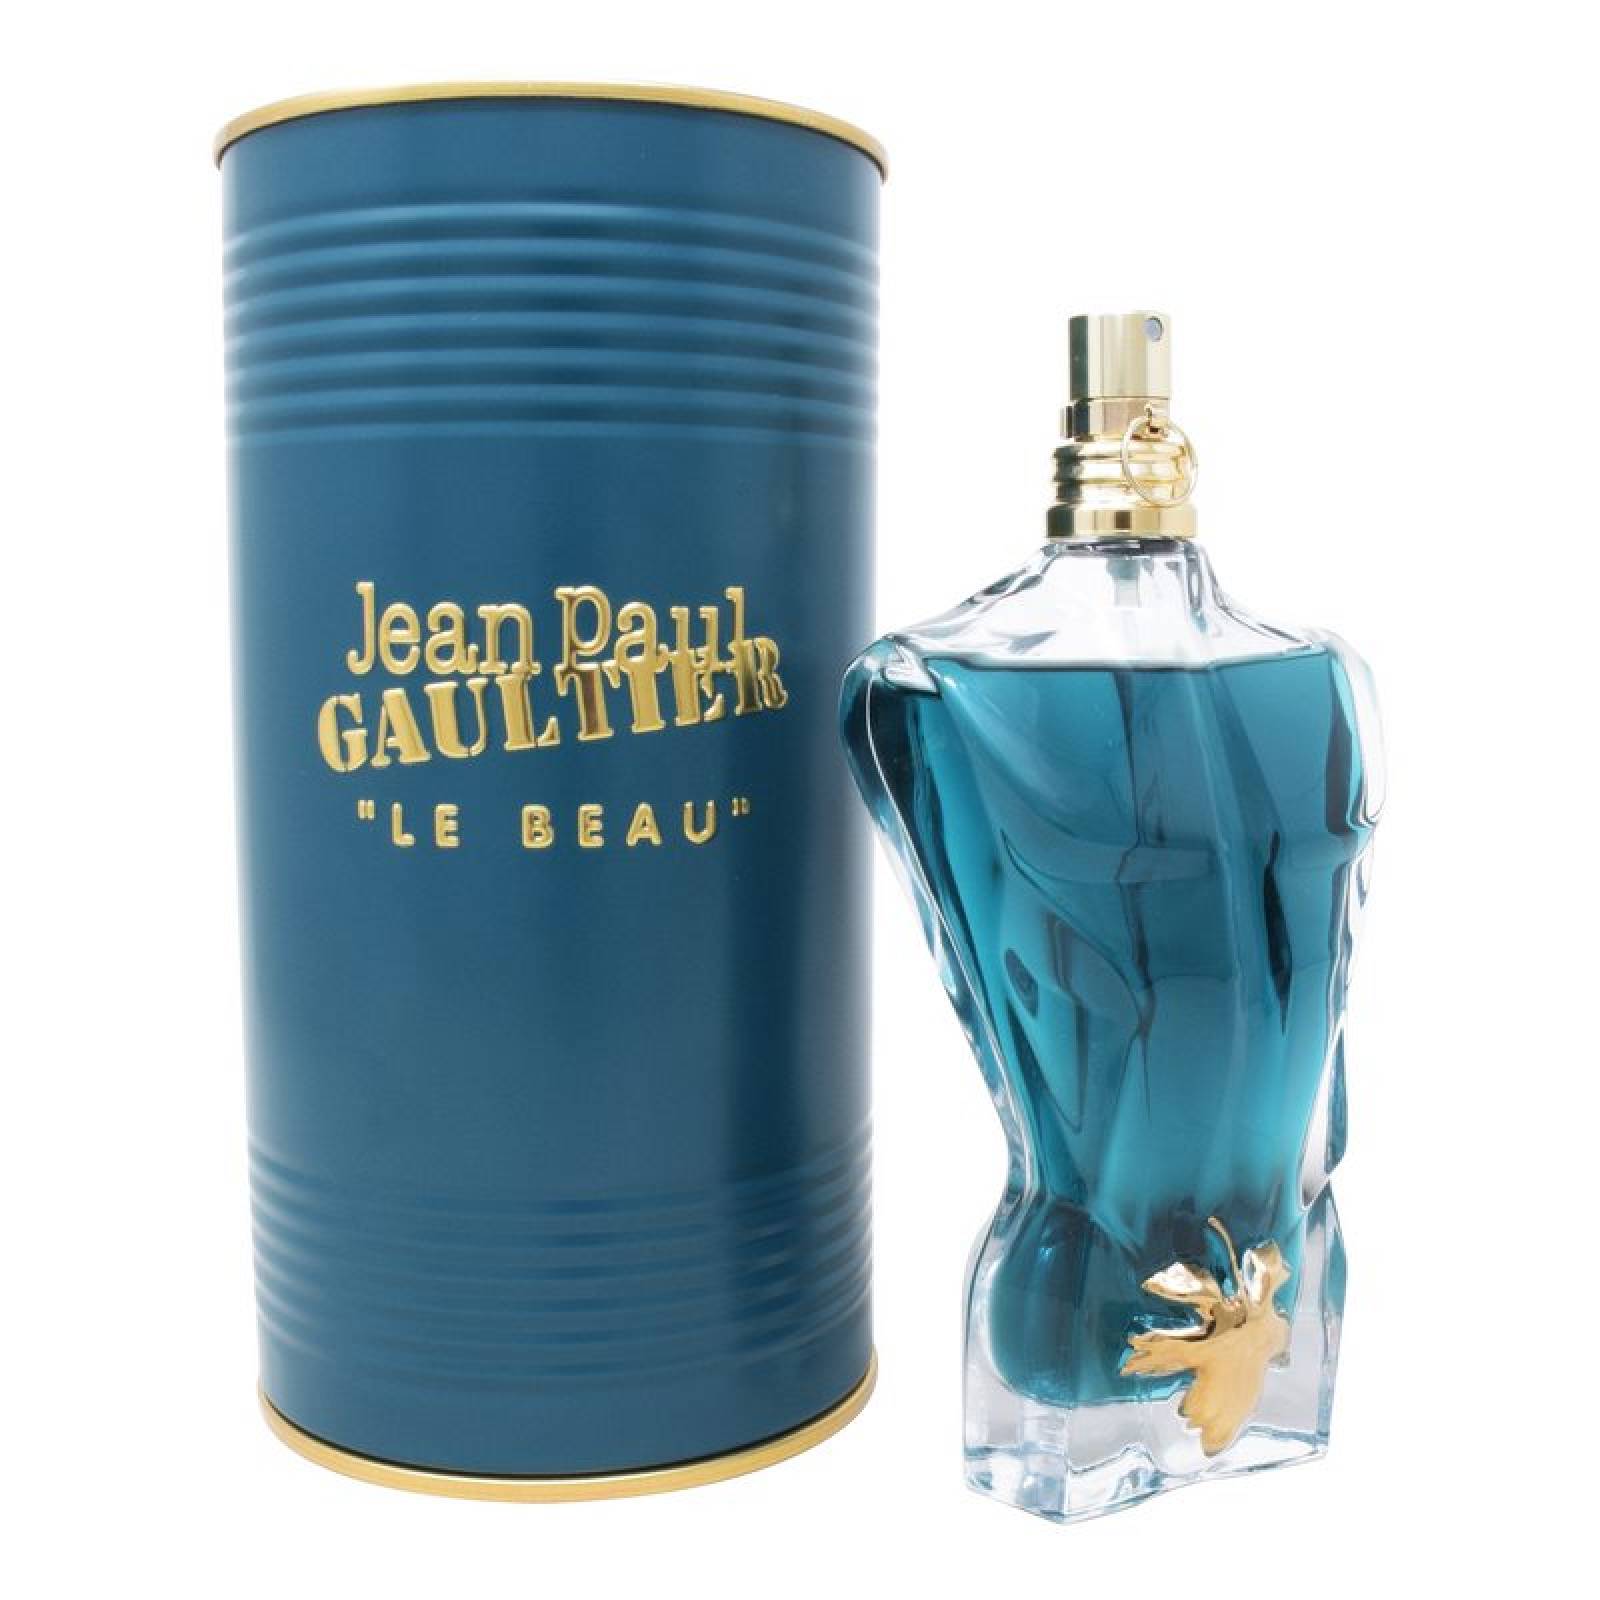 Le Beau 125 ml Eau de Toilette de Jean Paul Gaultier